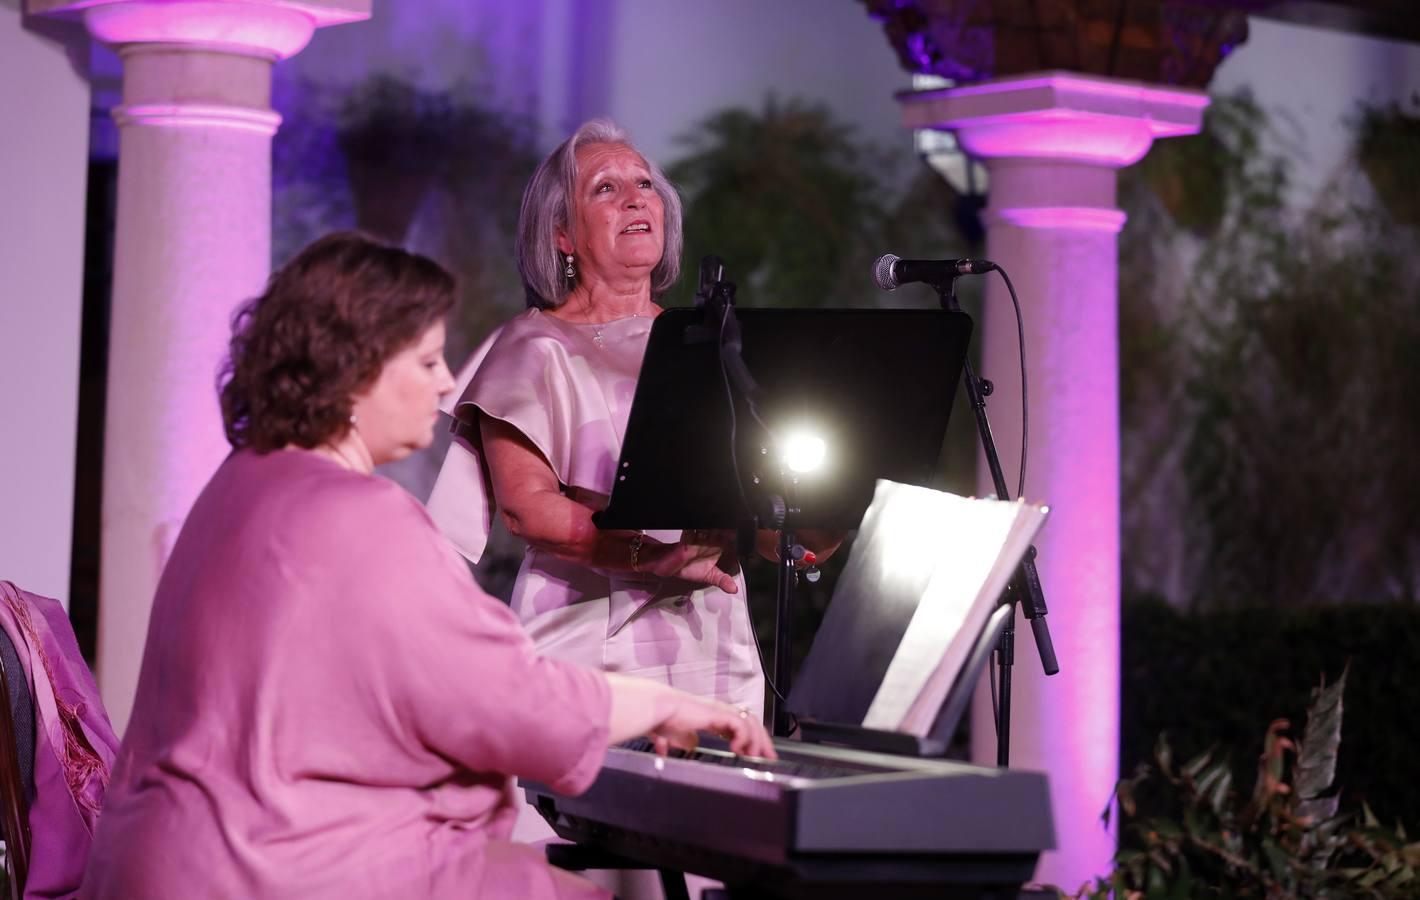 La gala homenaje a las mujeres con cáncer de mama de Córdoba, en imágenes